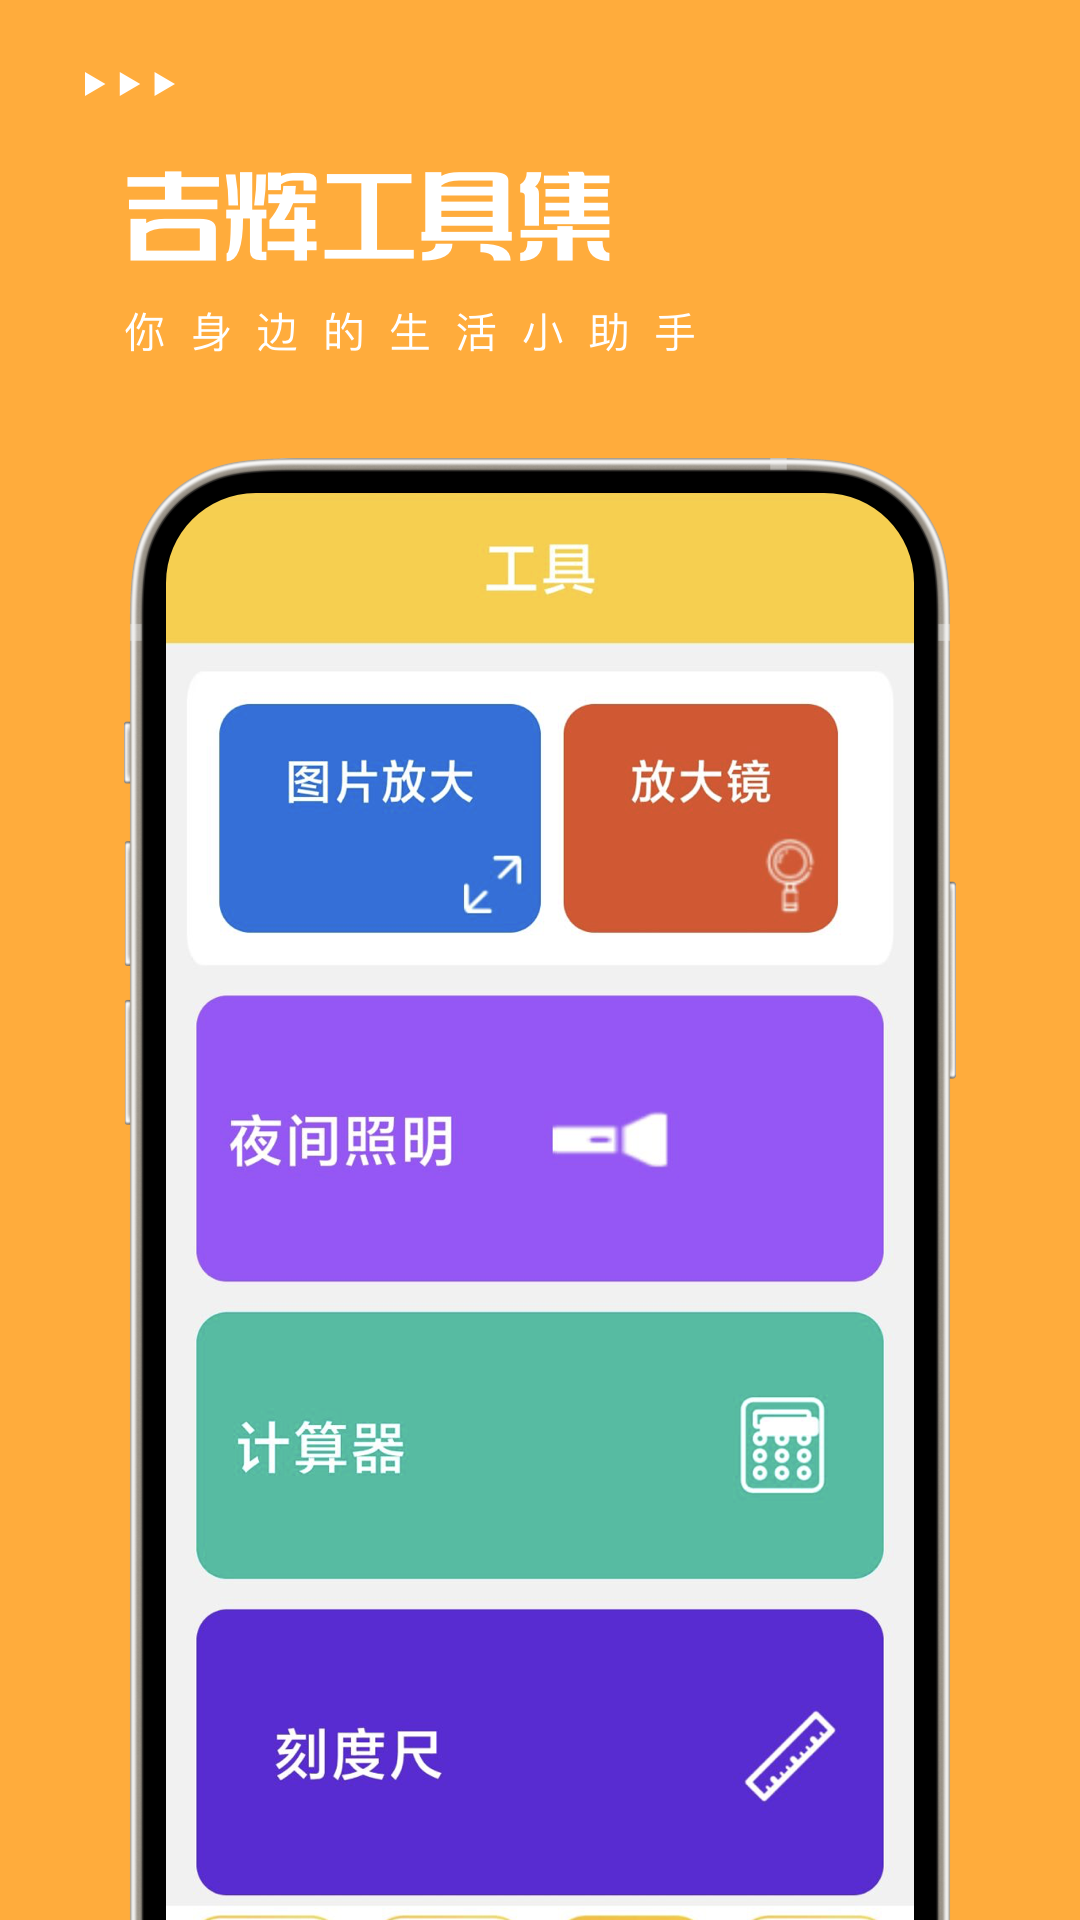 吉辉工具集app下载,吉辉工具集app官方版 v1.0.0